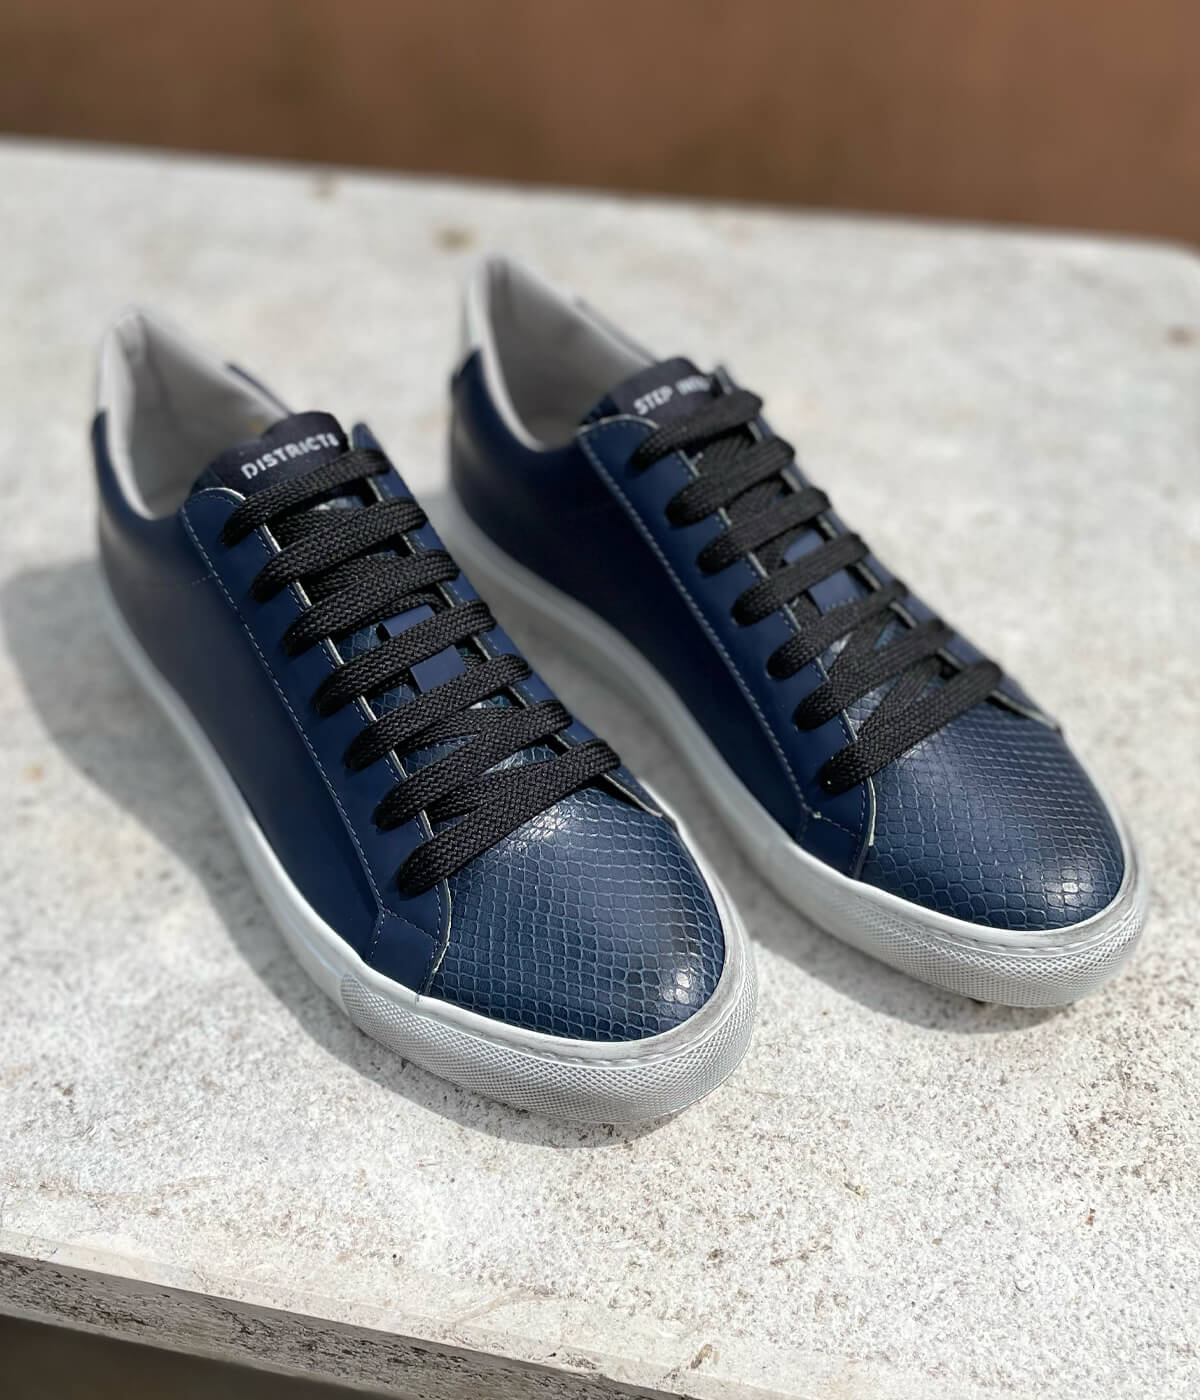 DISTRICT8 - Sneakers Wet Paint (841) in pelle gommata blu, punta in rettile stampato e logo laserizzato